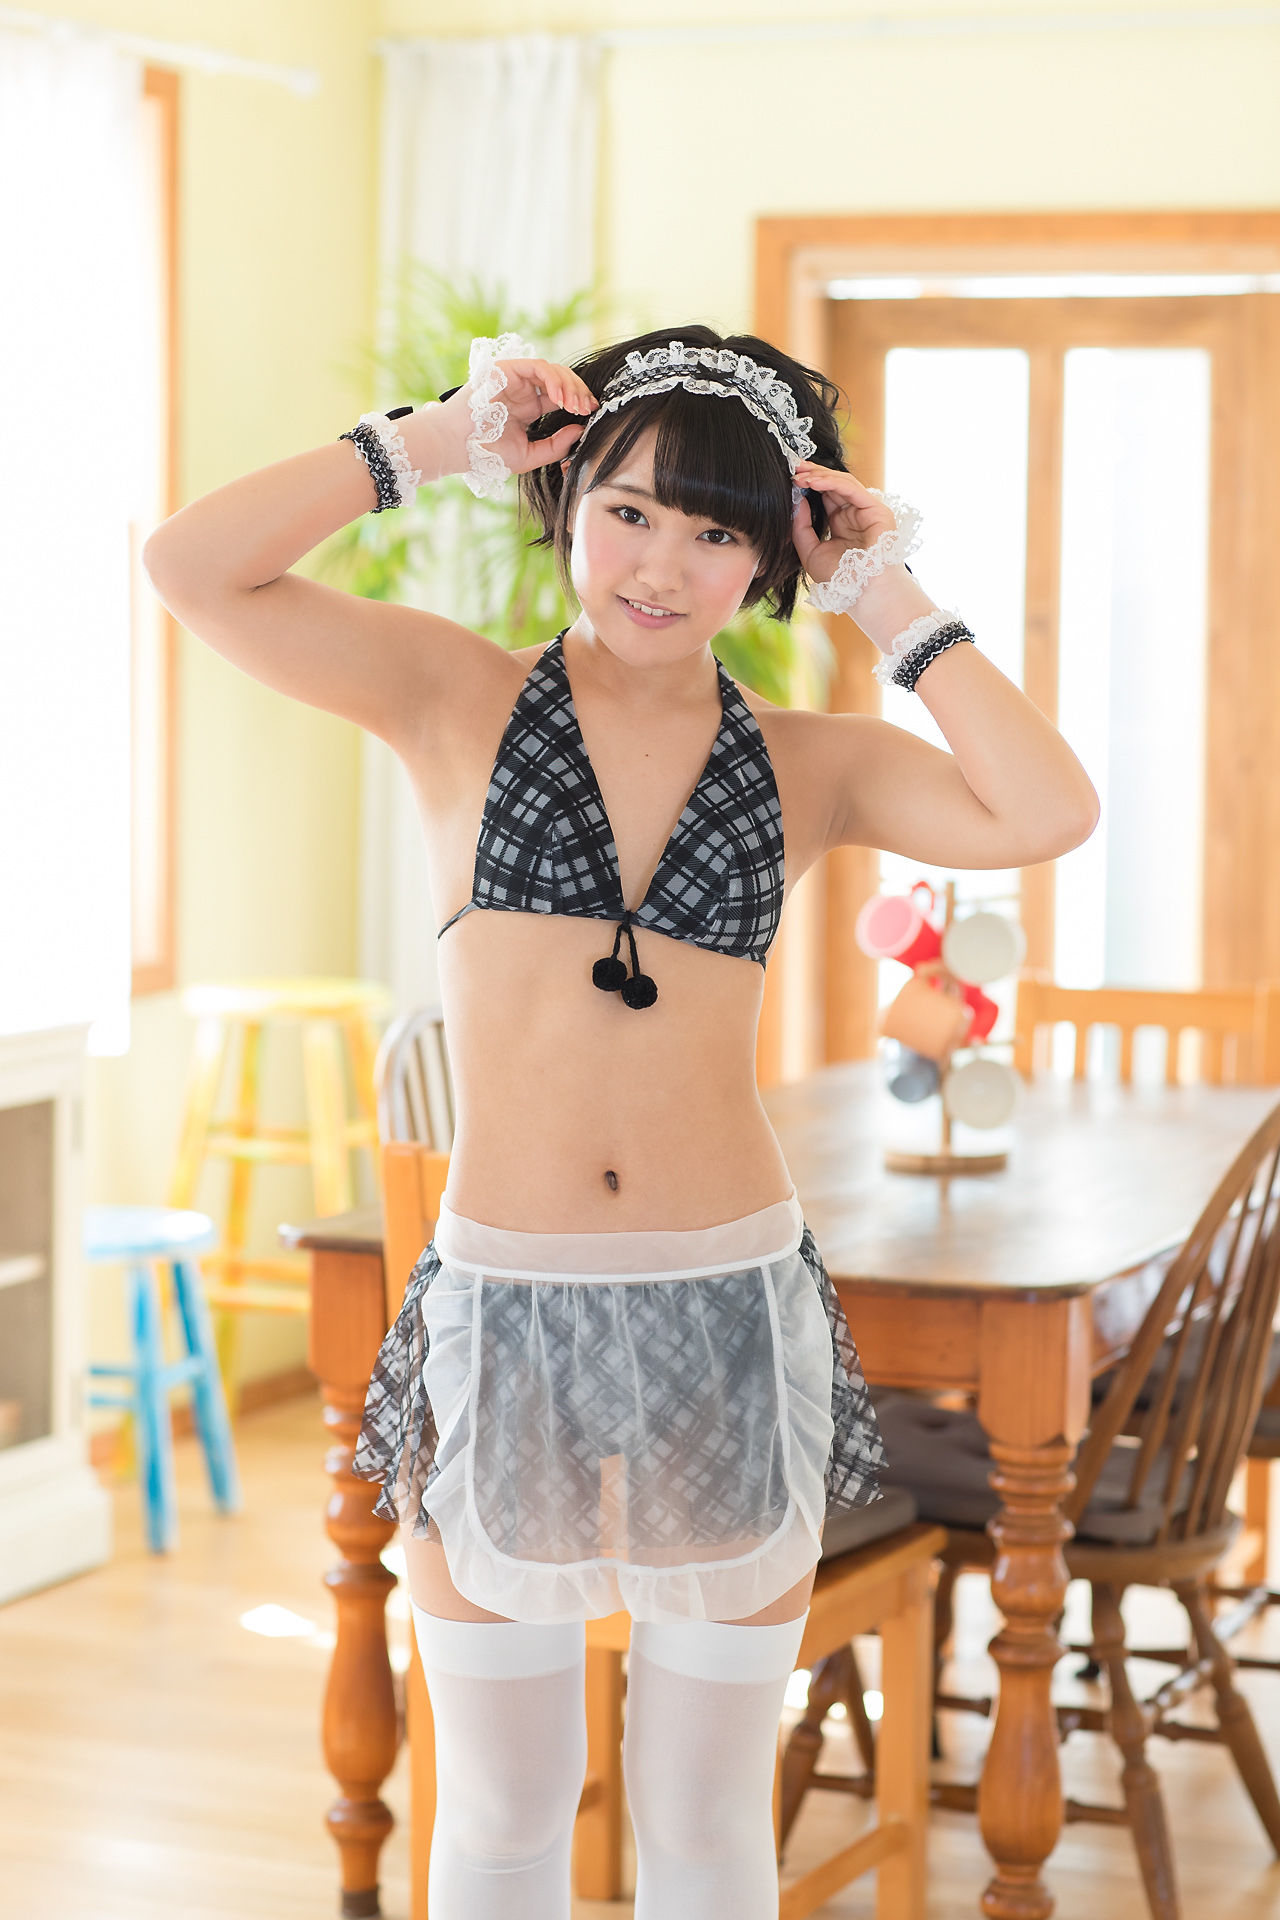 [Minisuka.tv]日本少女美厨娘:香月杏珠(香月りお)高品质壁纸图片珍藏版(45P)